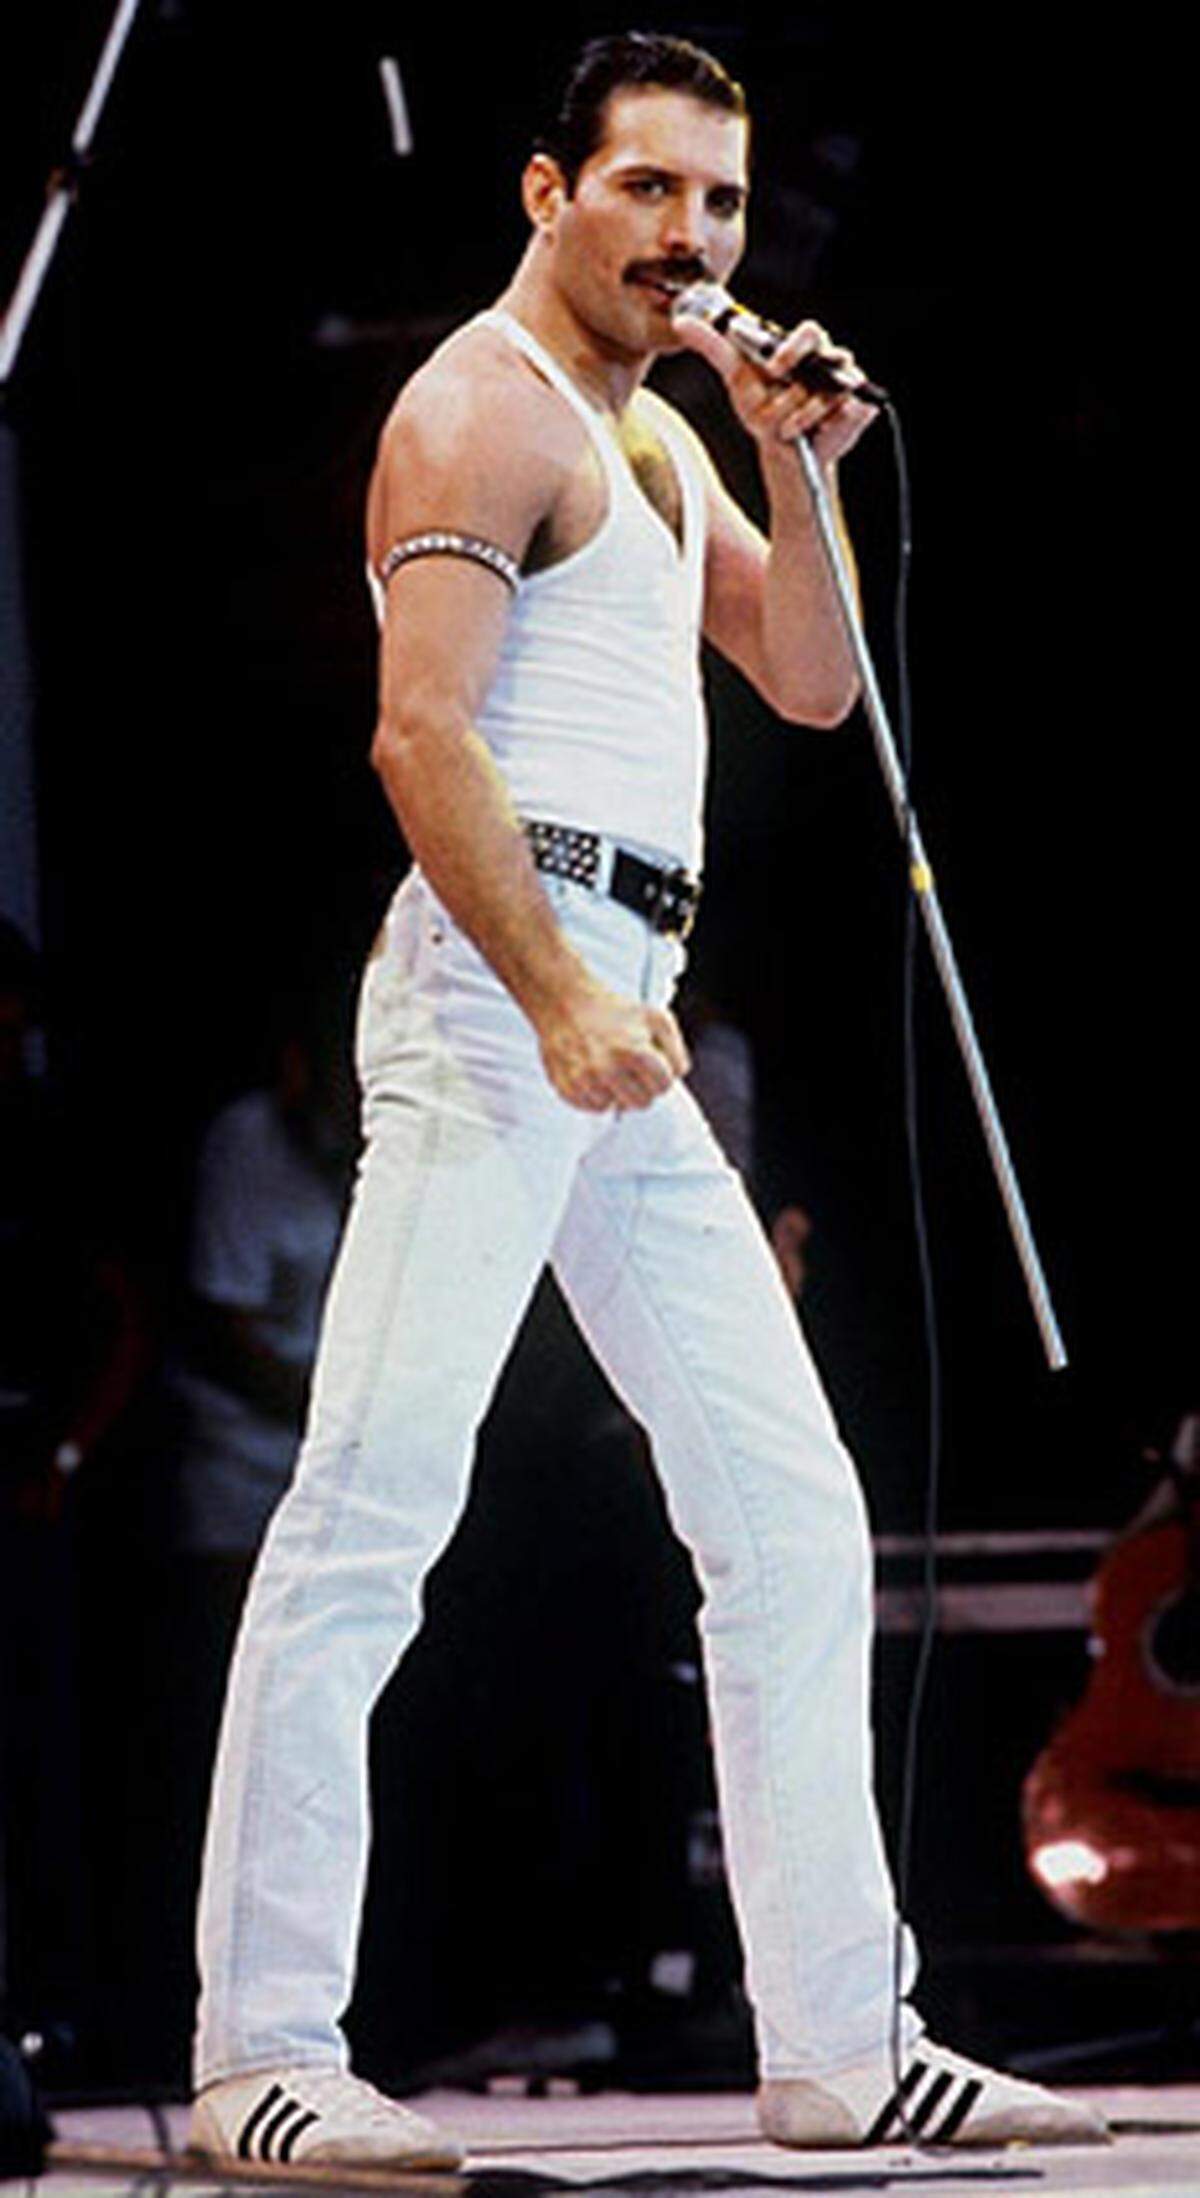 Nur einen Tag vor seinem Tod am 24. November 1991 machte Freddie Mercury, der als exzentrischer Sänger von Queen zu den bedeutendsten Musikern der 70er- und 80er-Jahr zählte, seine Aids-Erkrankung öffentlich. Mercury war die maskulinste "Diva" im Rockbusiness gewesen. Kein Lederkostüm konnte ihm zu ausgefallen und erotisch provokant, kein Auftritt zu bombastisch inszeniert sein, aus seiner Bisexualität machte er nie ein Hehl. Mercury starb an den Folgen einer Lungenentzündung.